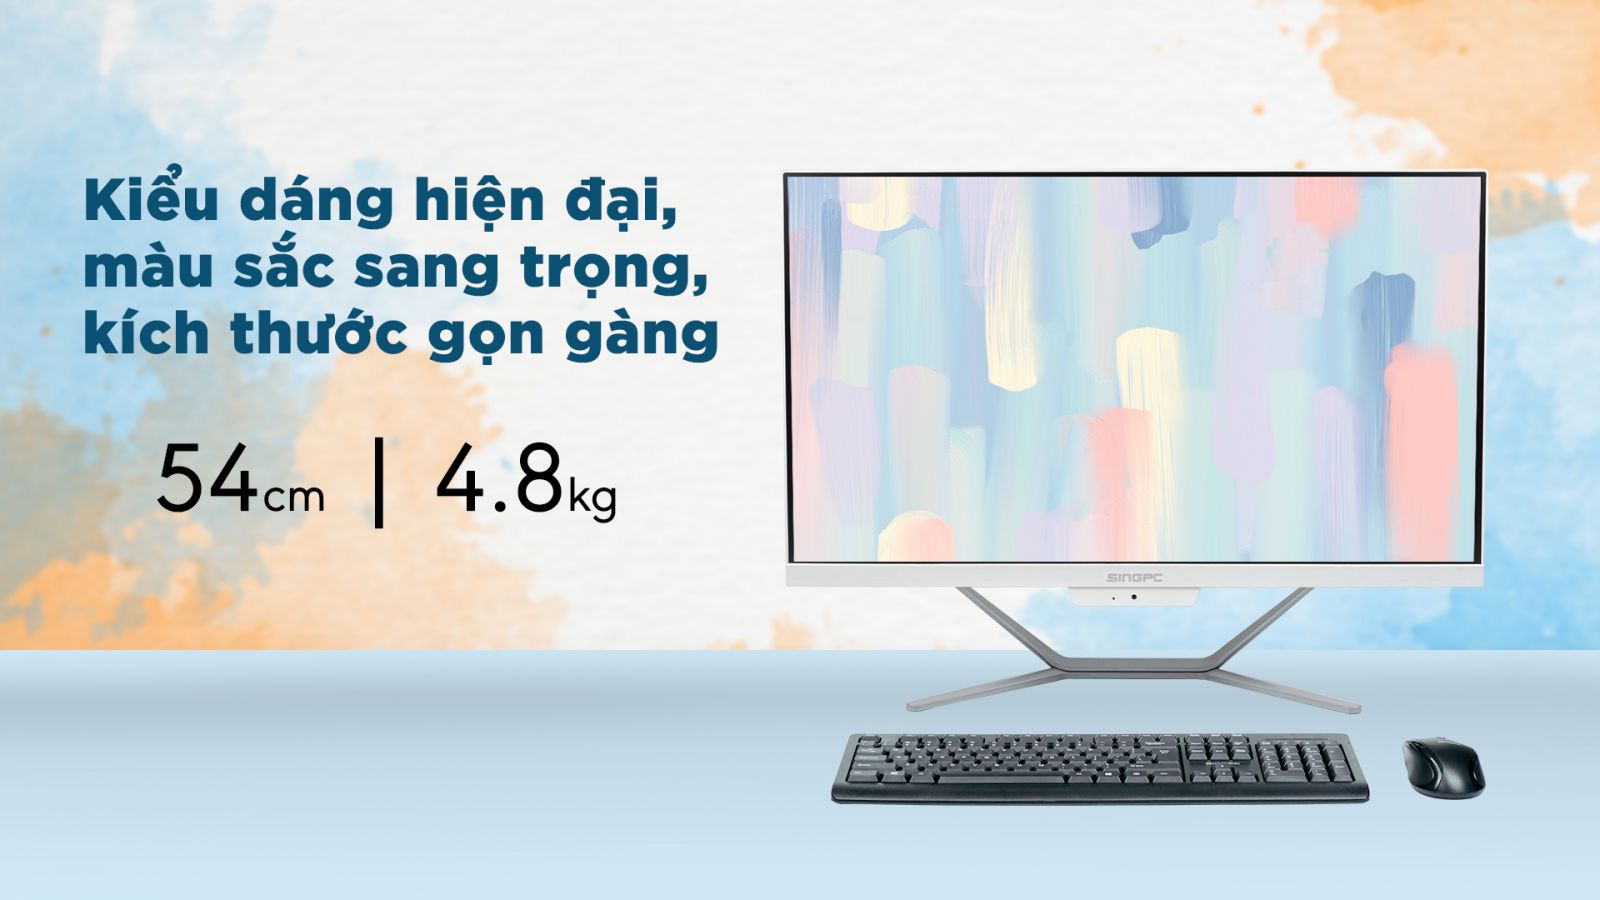 Hãy khám phá All in One Máy tính tuyệt đẹp và tiện ích! M24Ki3182-W của SingPC đáp ứng tất cả nhu cầu của bạn với màn hình cảm ứng HD rộng lớn 24 inch, bộ vi xử lý mạnh mẽ, hỗ trợ nâng cấp dễ dàng và thiết kế gọn gàng, tiết kiệm không gian.